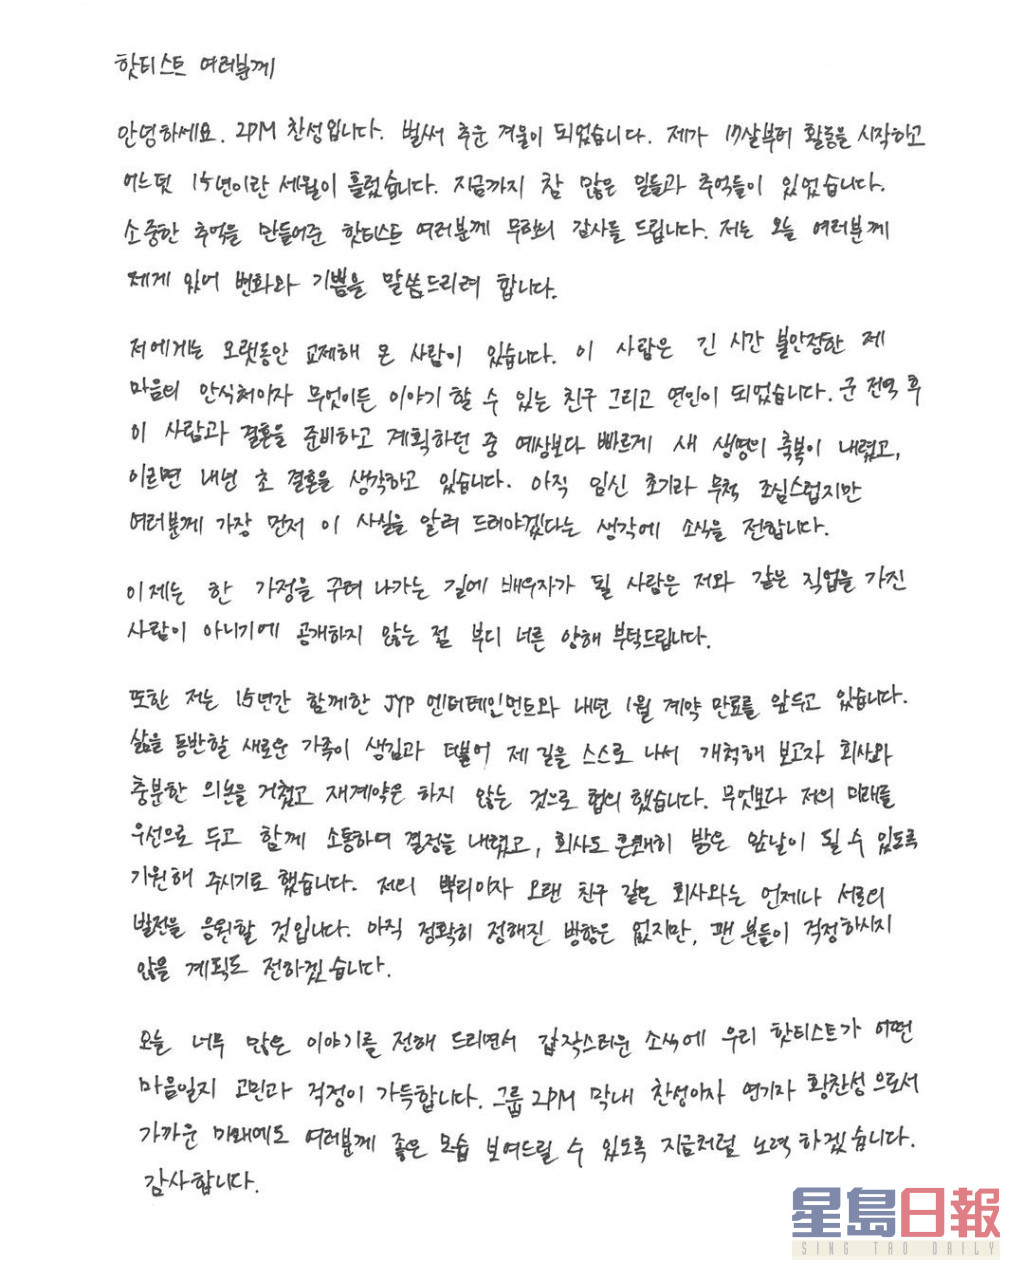 灿盛去年底以亲笔信一次公布奉子成婚及离巢JYP。